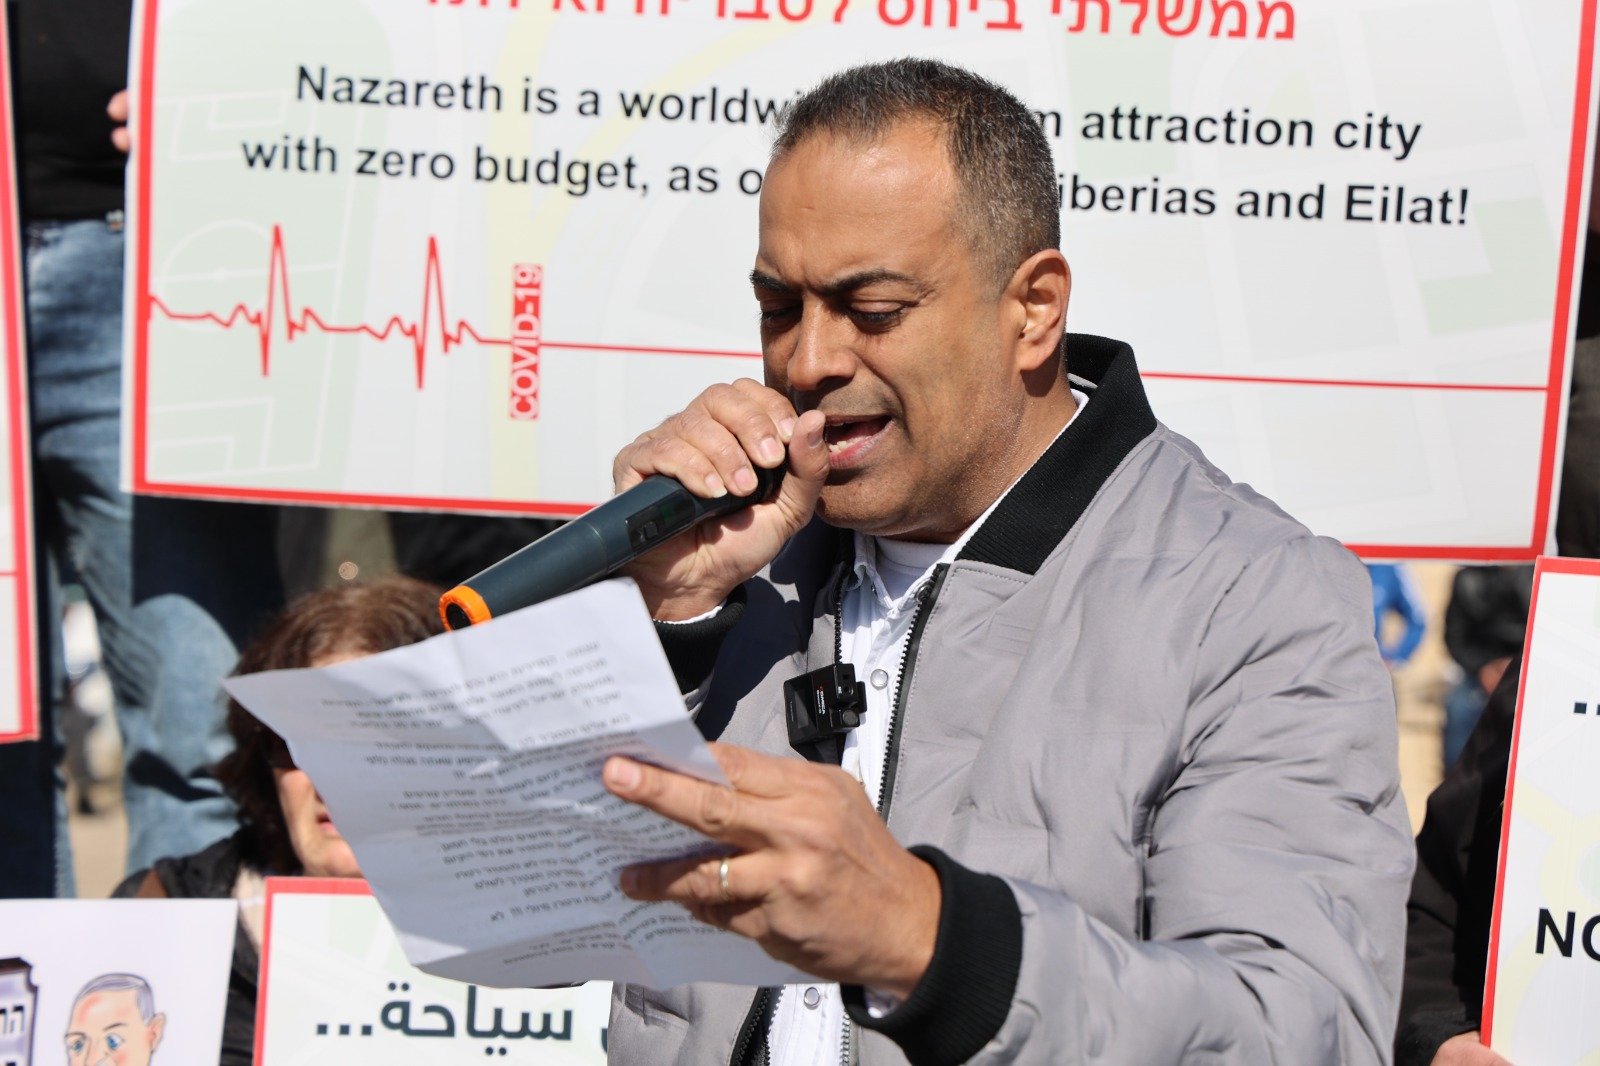 أزمة السياحة بسبب تقييدات الكورونا  - تظاهرة غاضبة في الناصرة-18